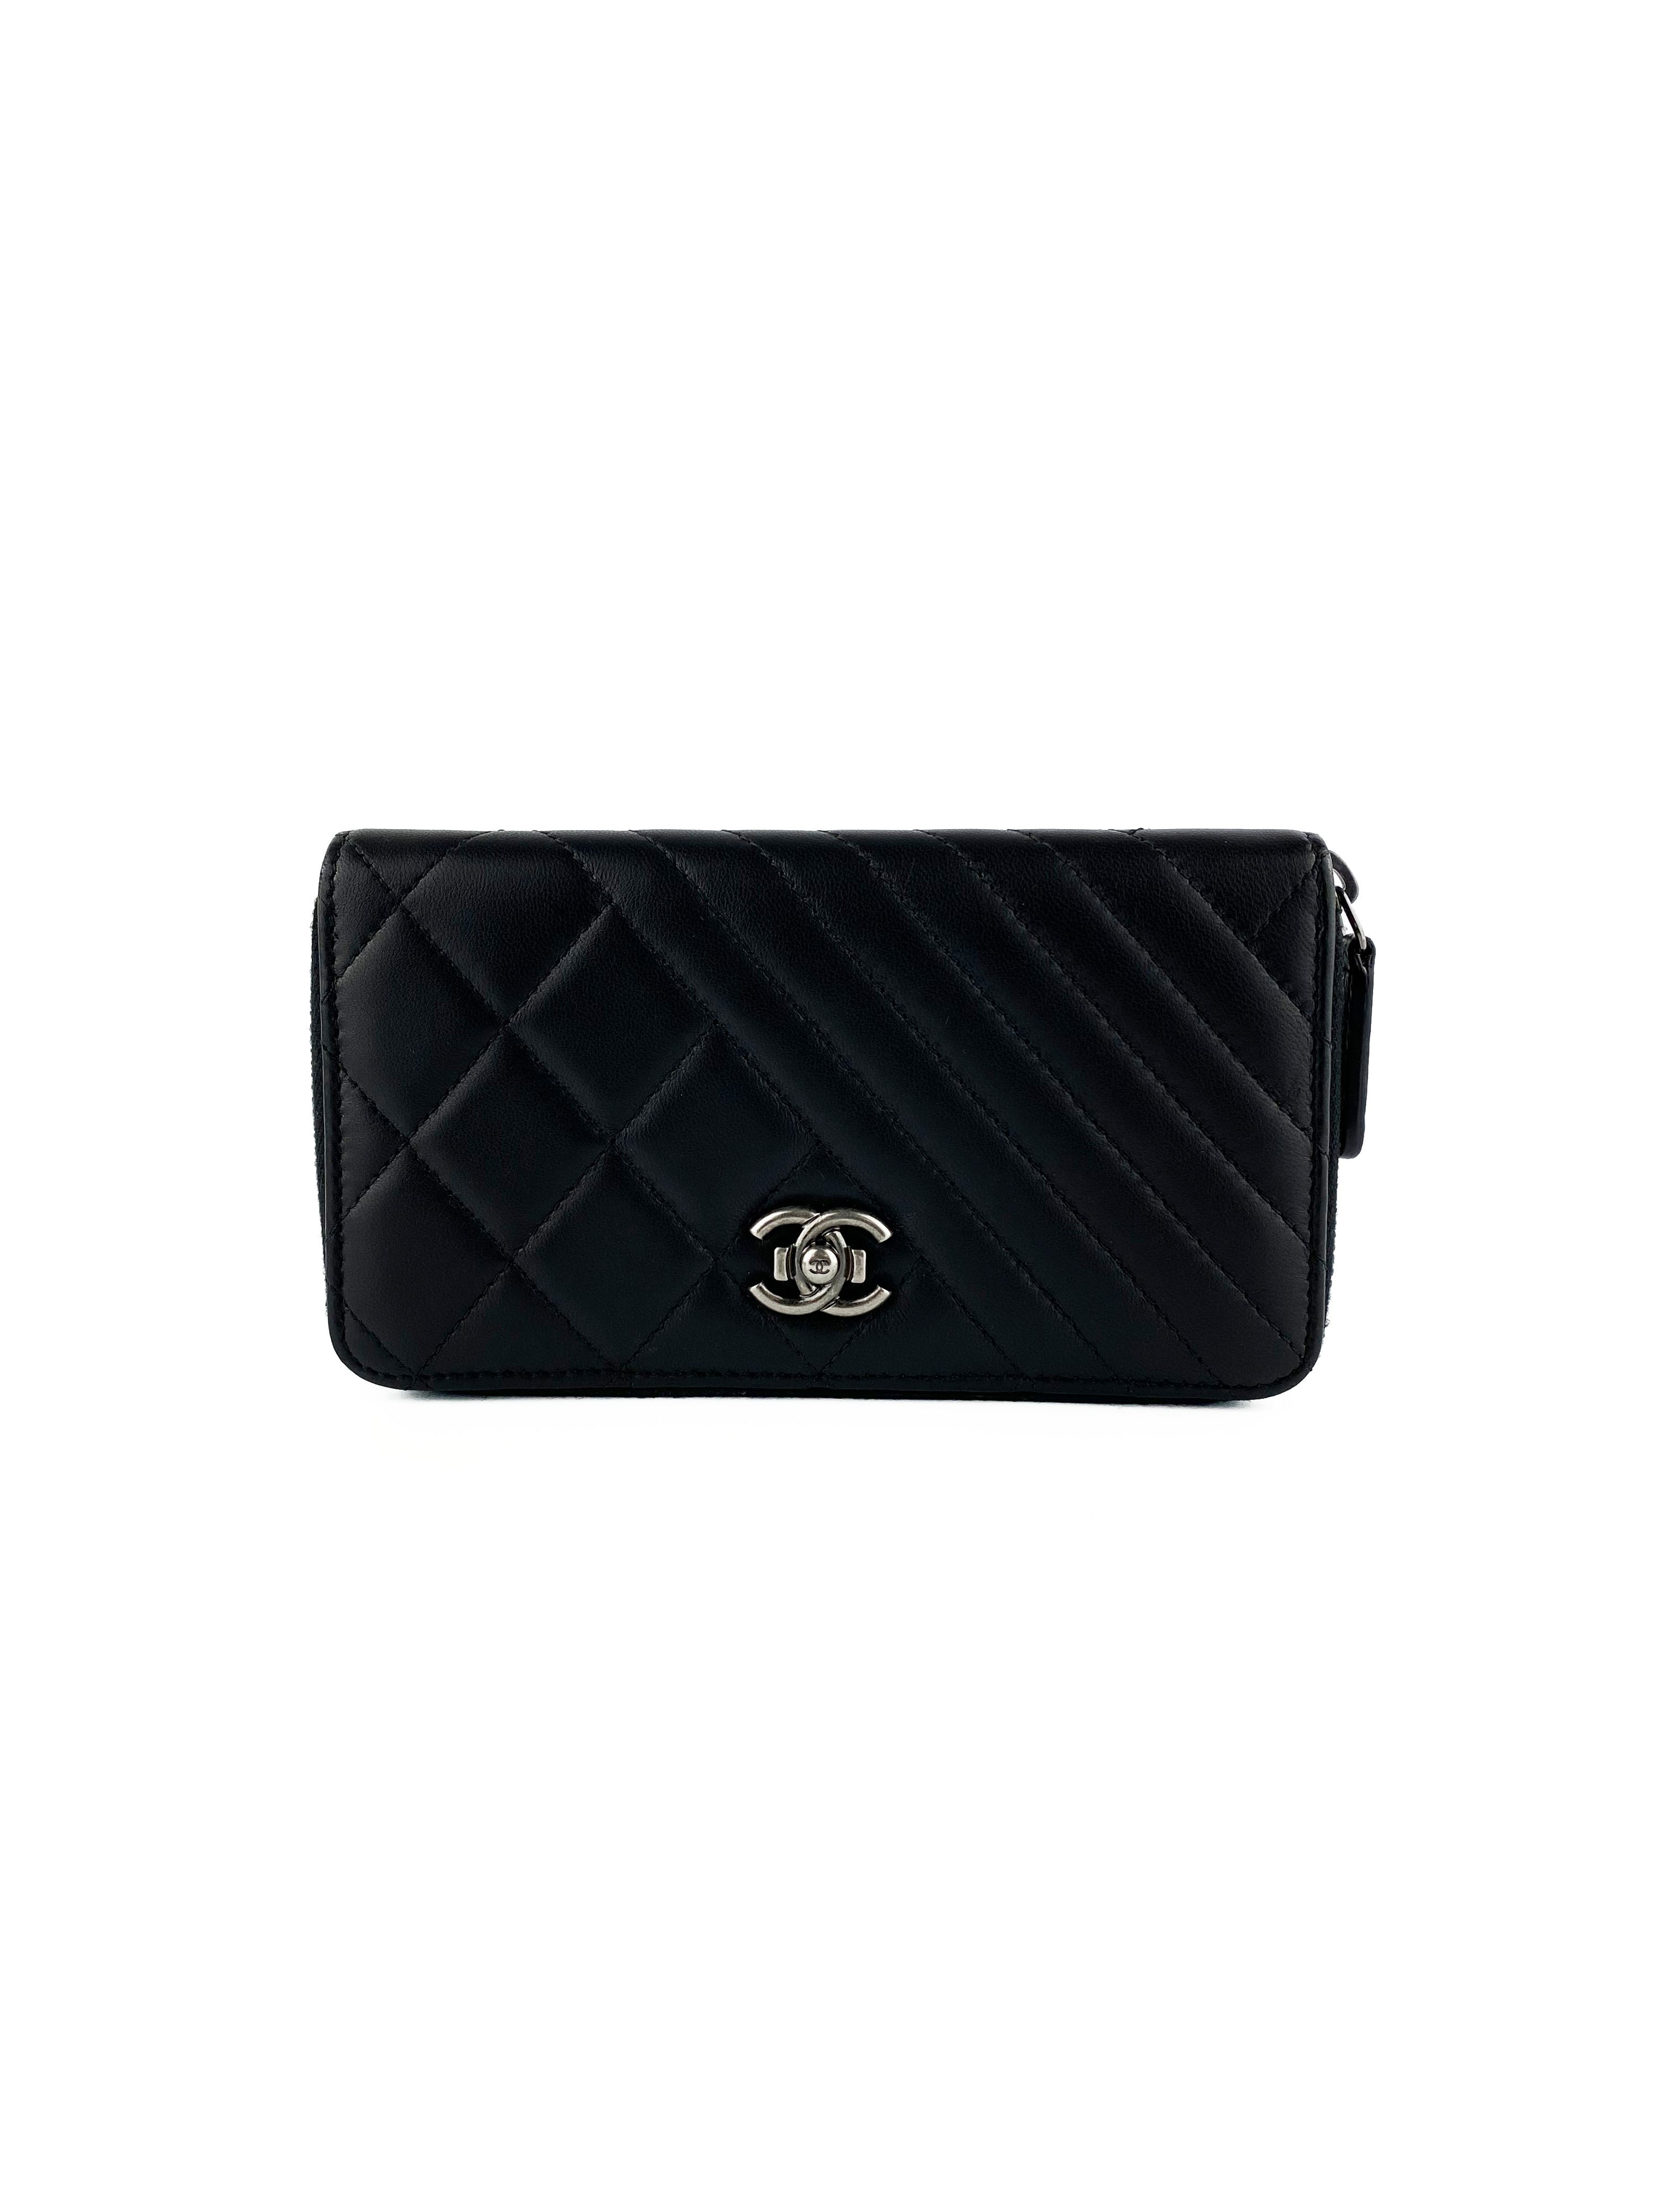 Chanel Black Zipped Lambskin Wallet